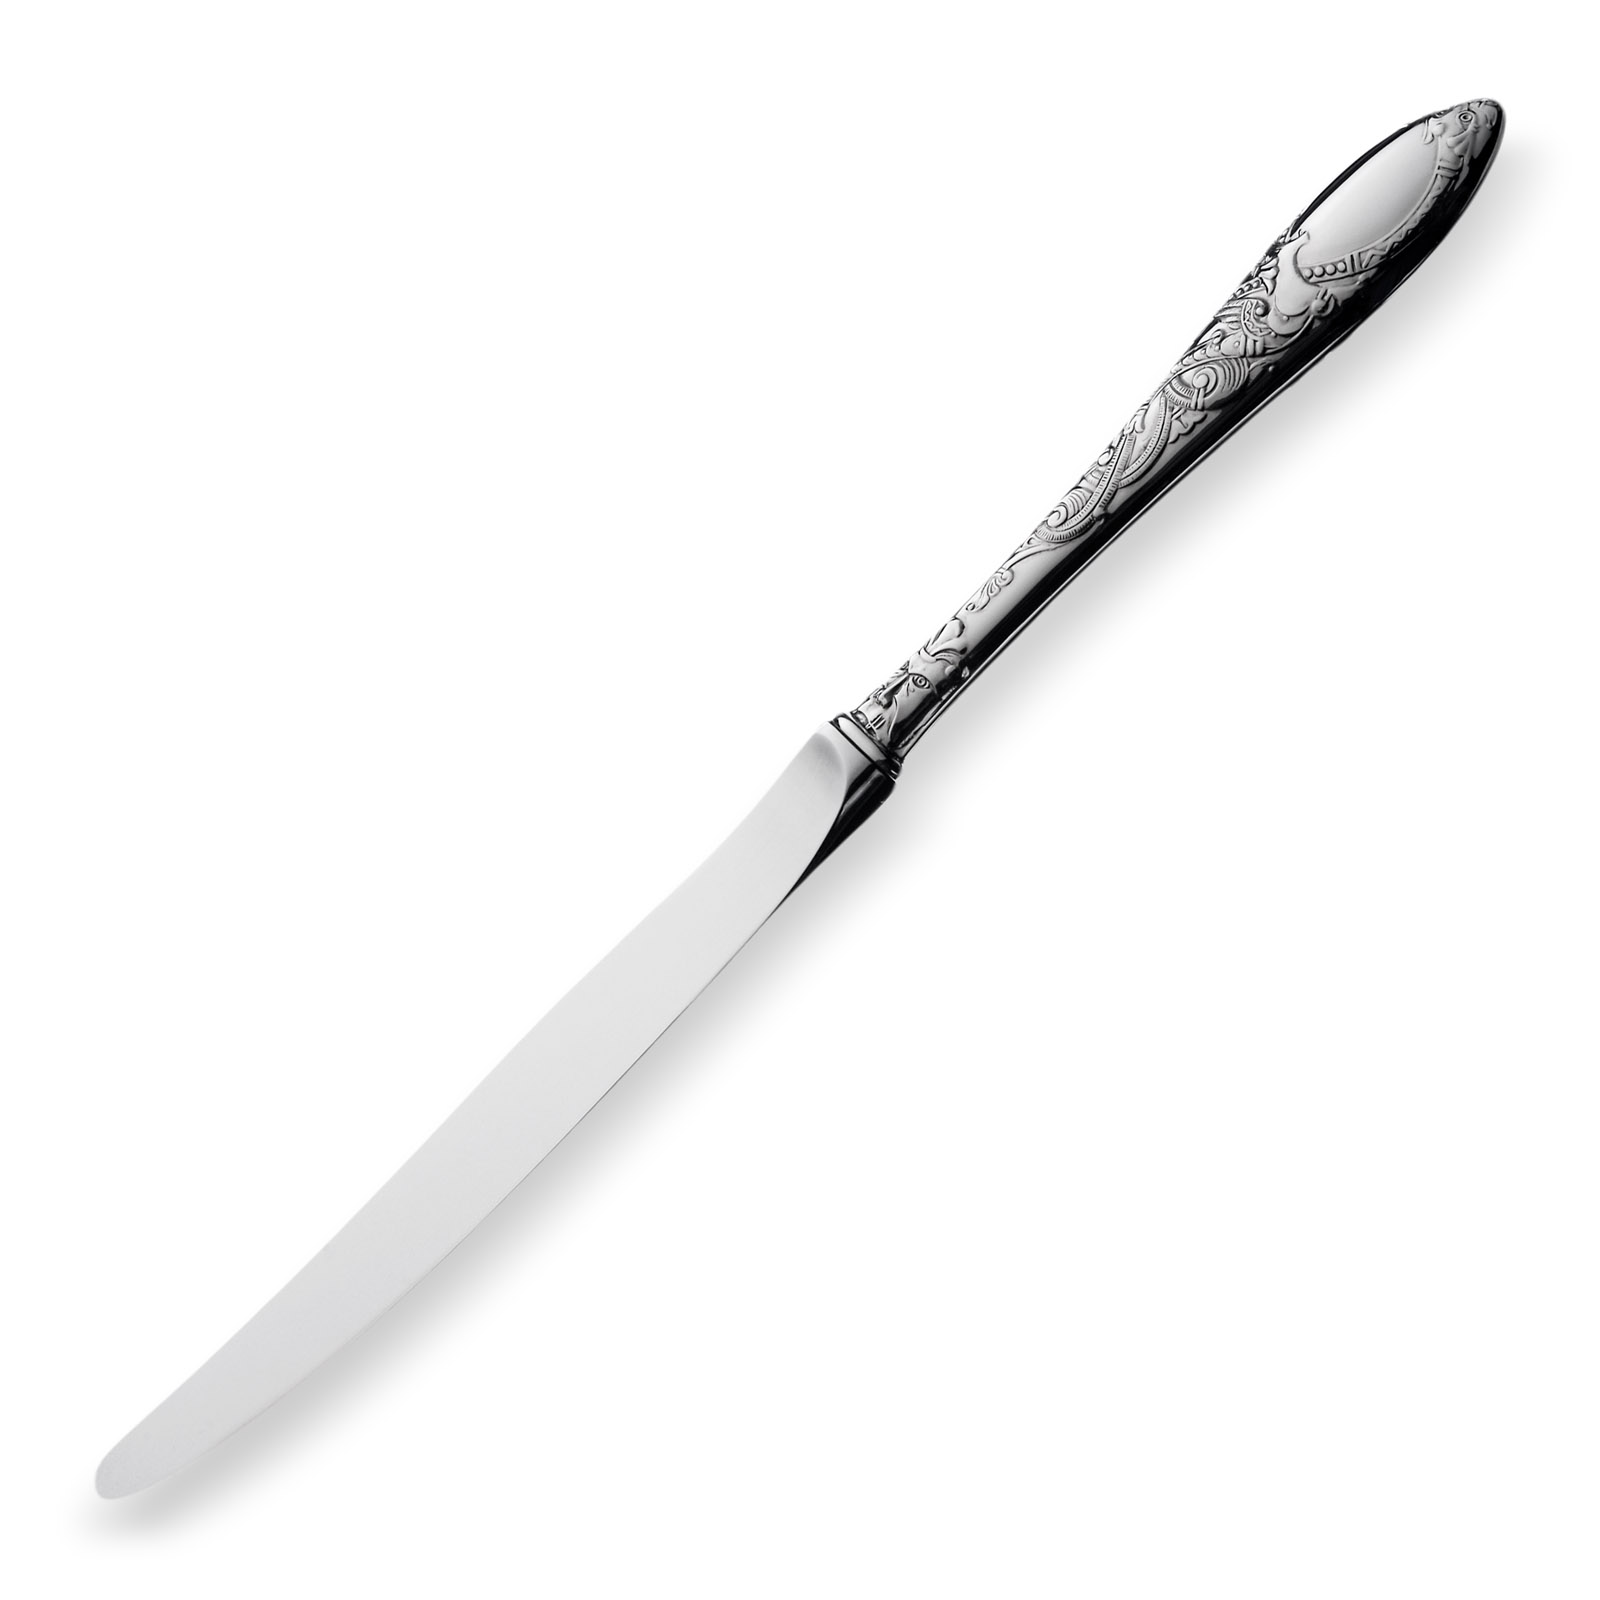 DRAGE, STOR SPISEKNIV Sølv spisekniv i mønsteret Drage. 
Varenummer: 038504
Lengde: 24,80 cm
Sølv: 830S